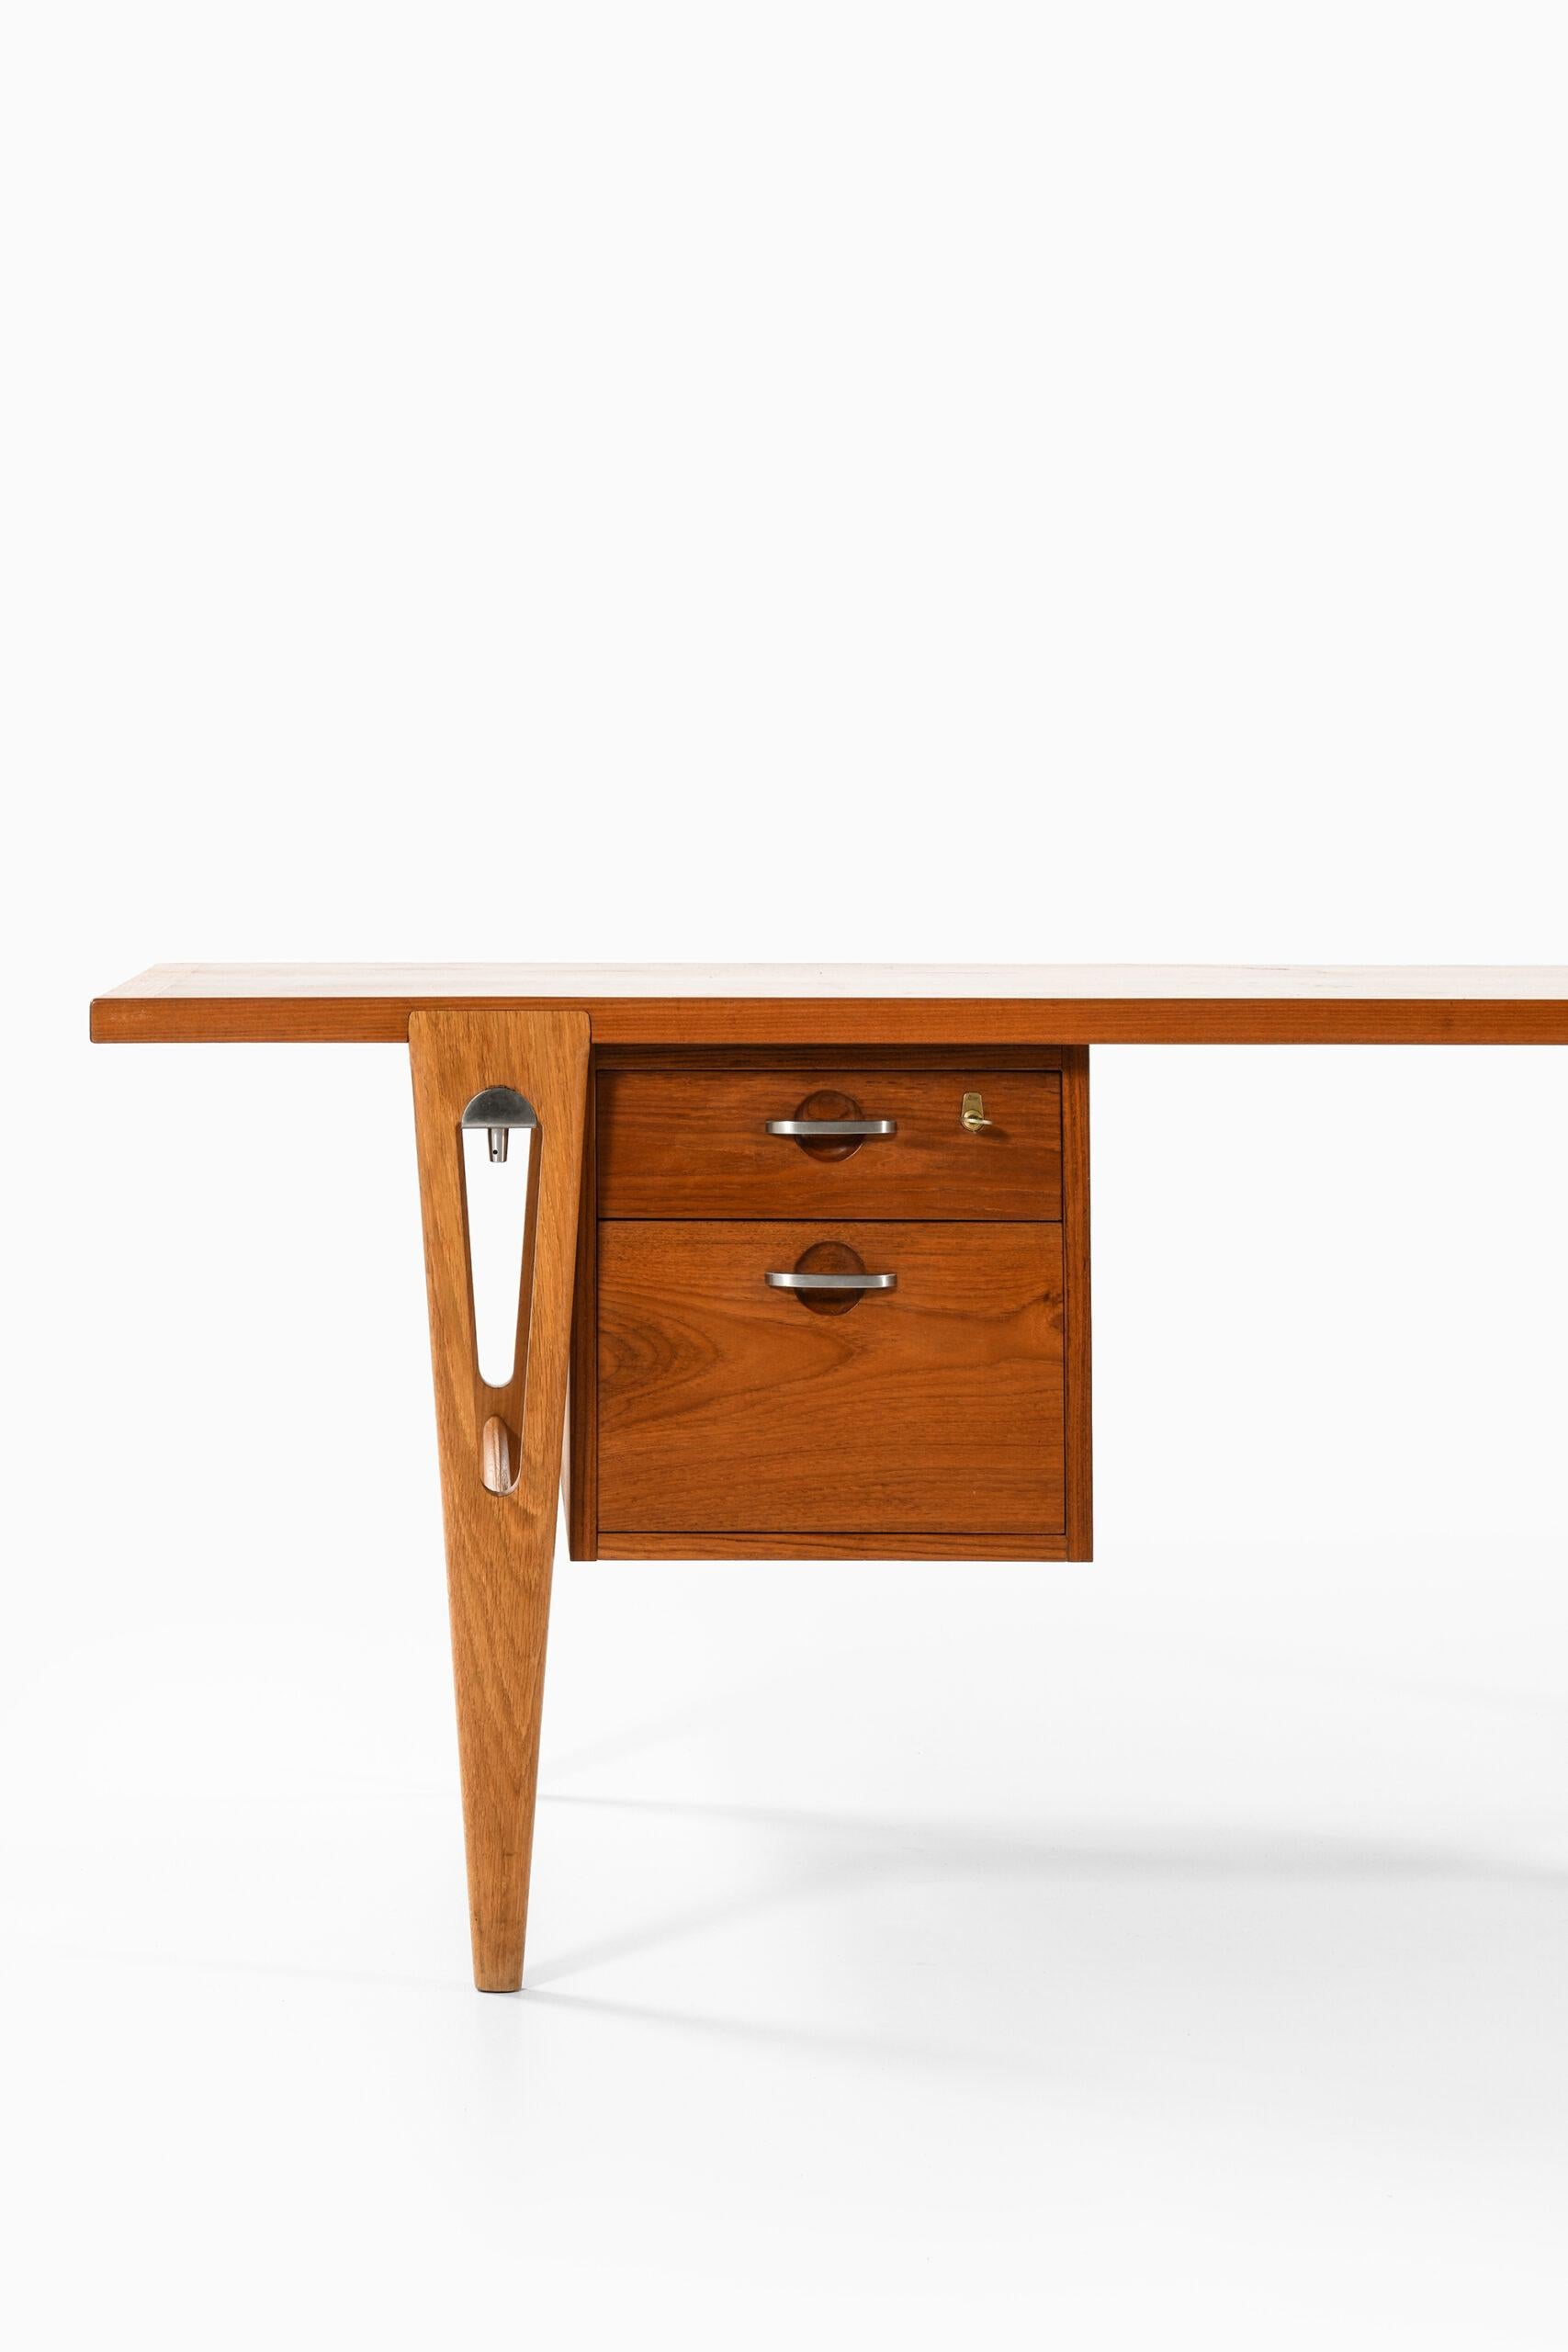 Sehr seltener freistehender Schreibtisch, entworfen von Hans Wegner. Hergestellt vom Tischler Johannes Hansen in Dänemark.